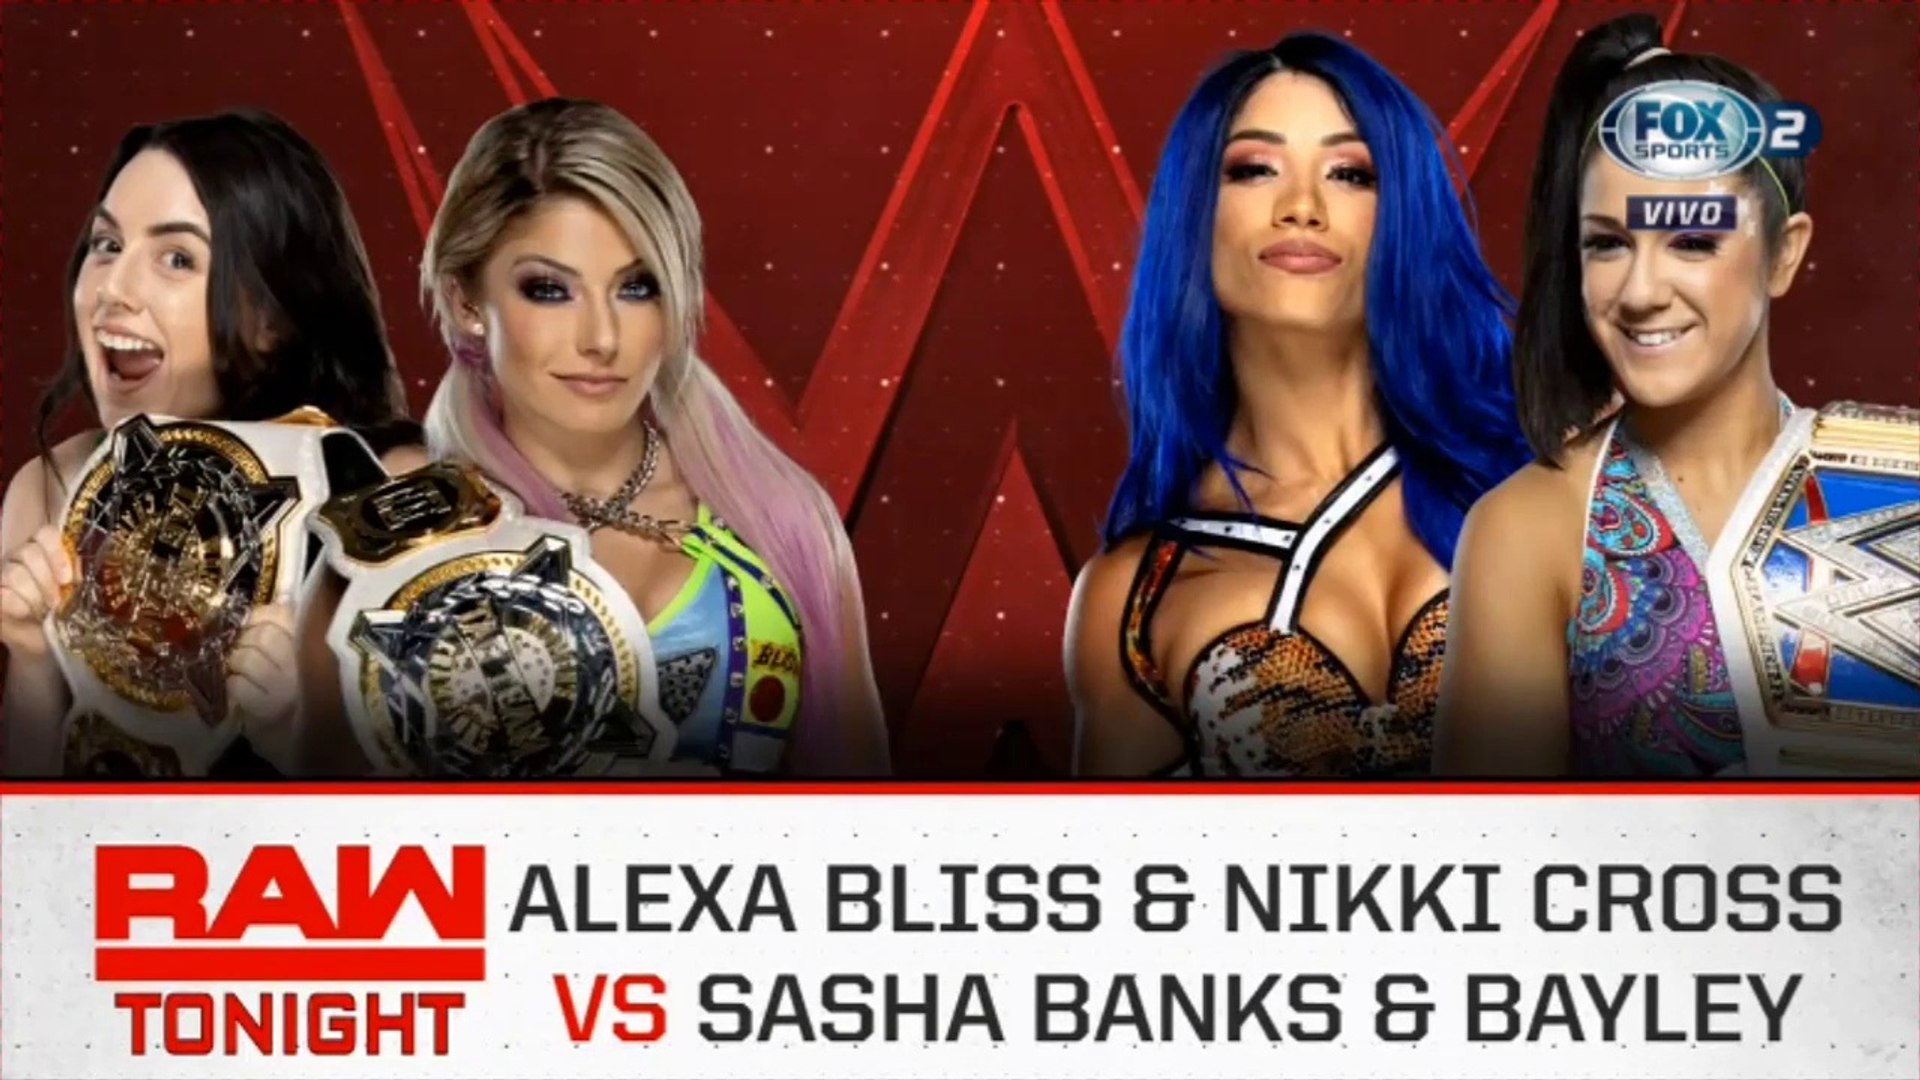 Sasha Banks Tits